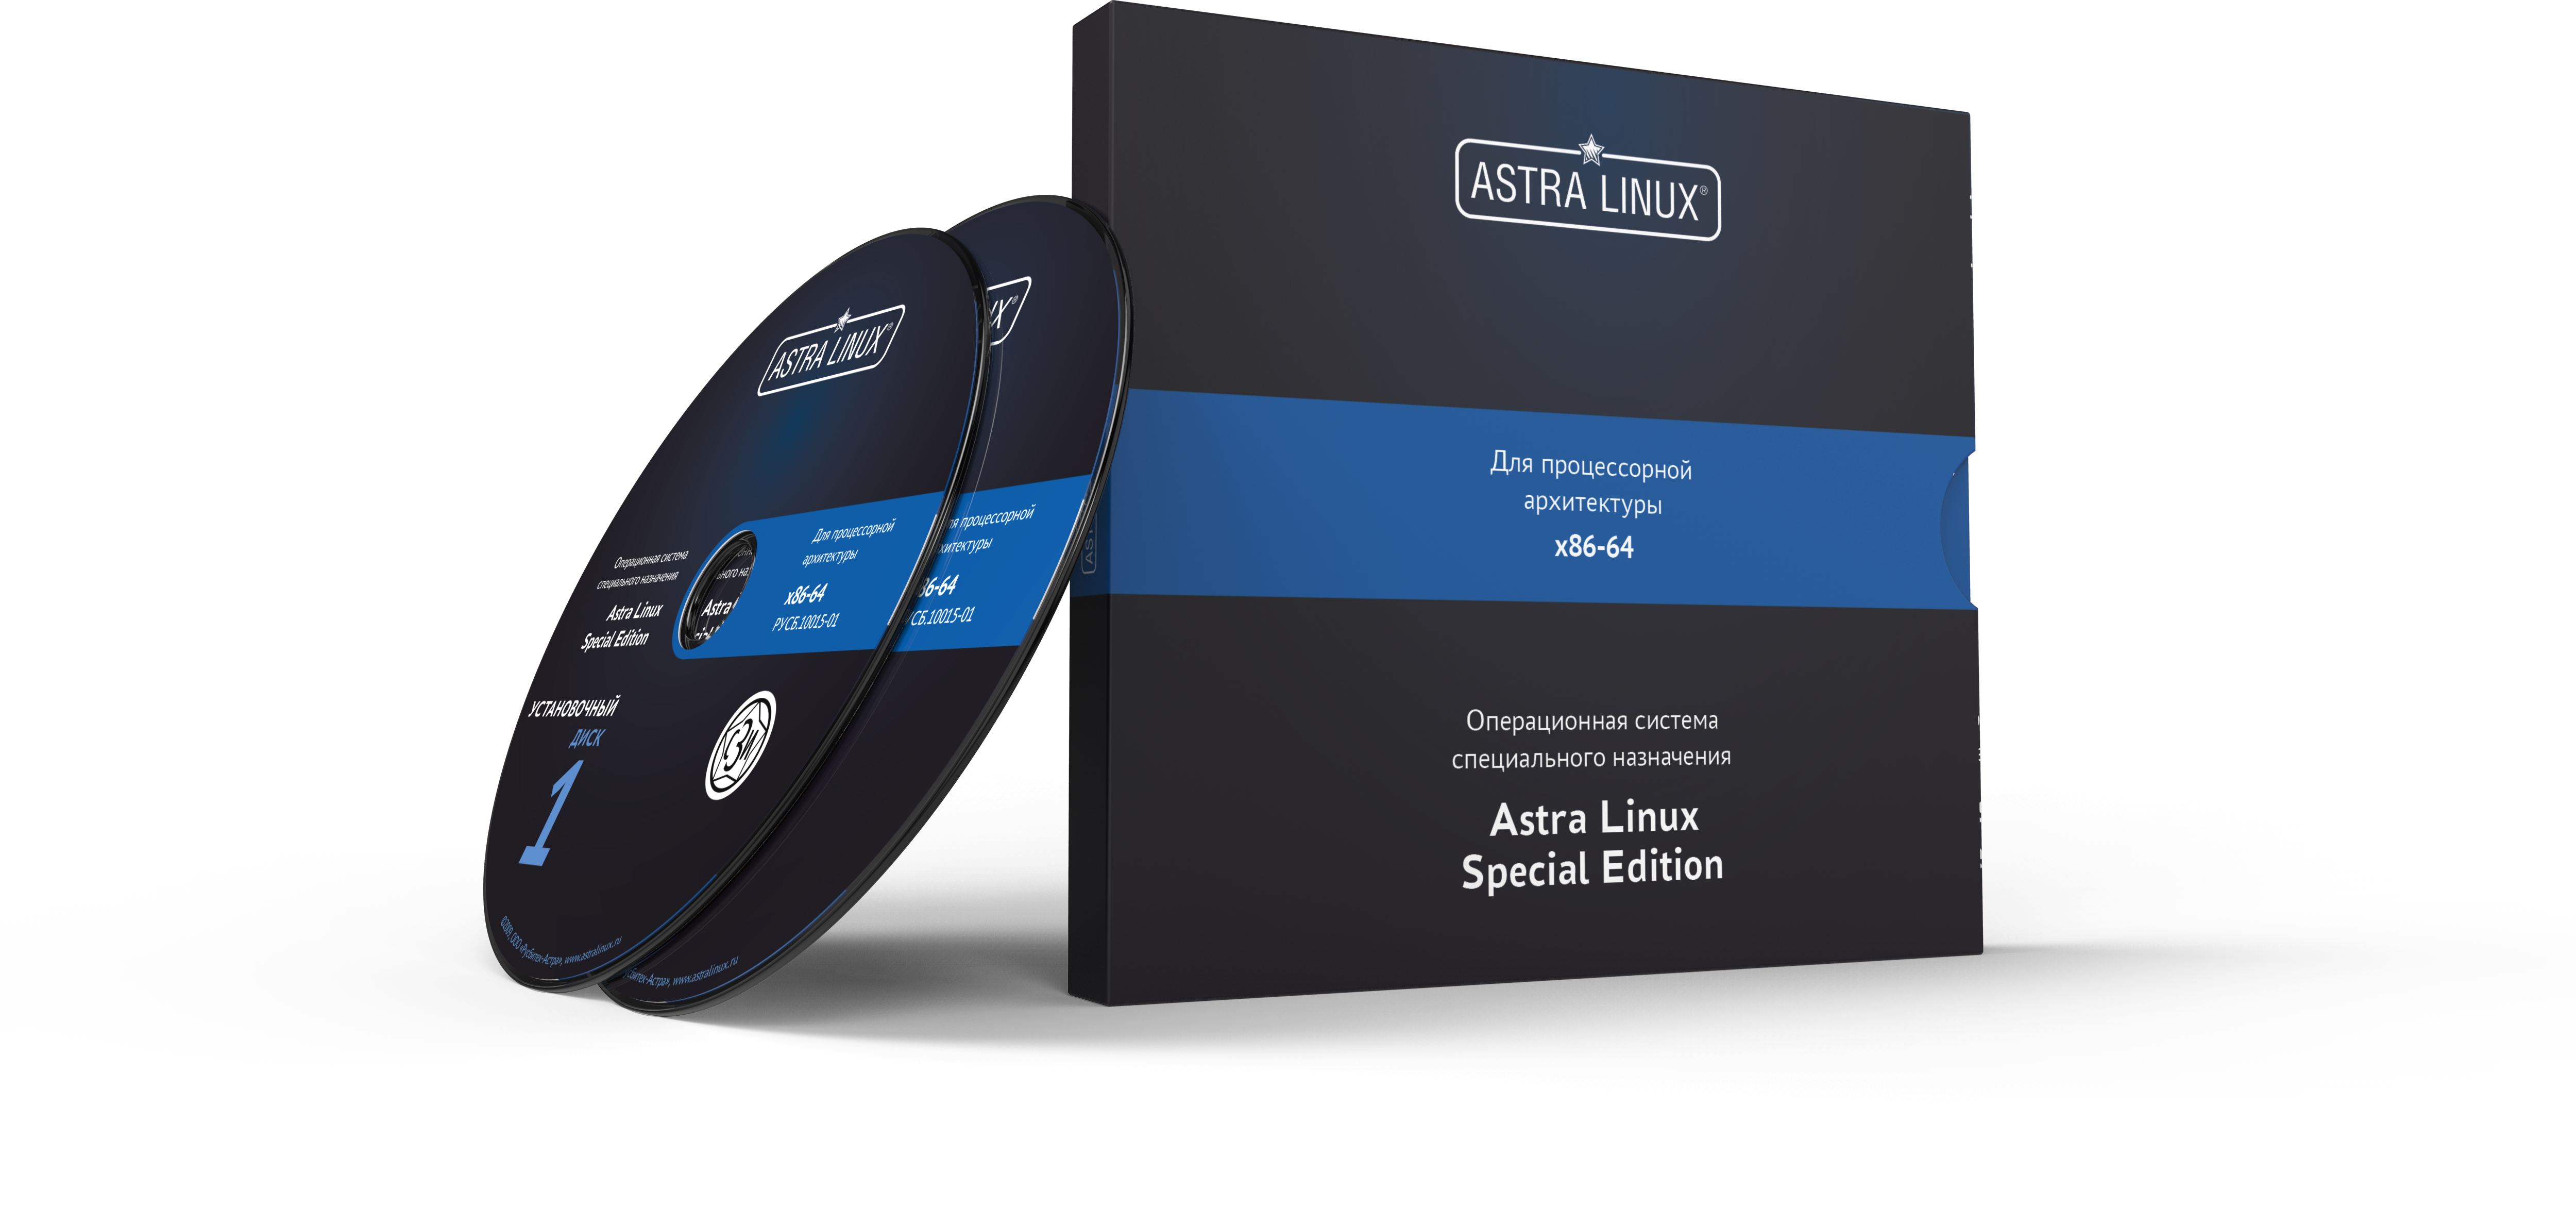 Сертификат ТП Astra Linux Special Edition - Орел, электронный, ТП "Привилегированная" на 24 мес.